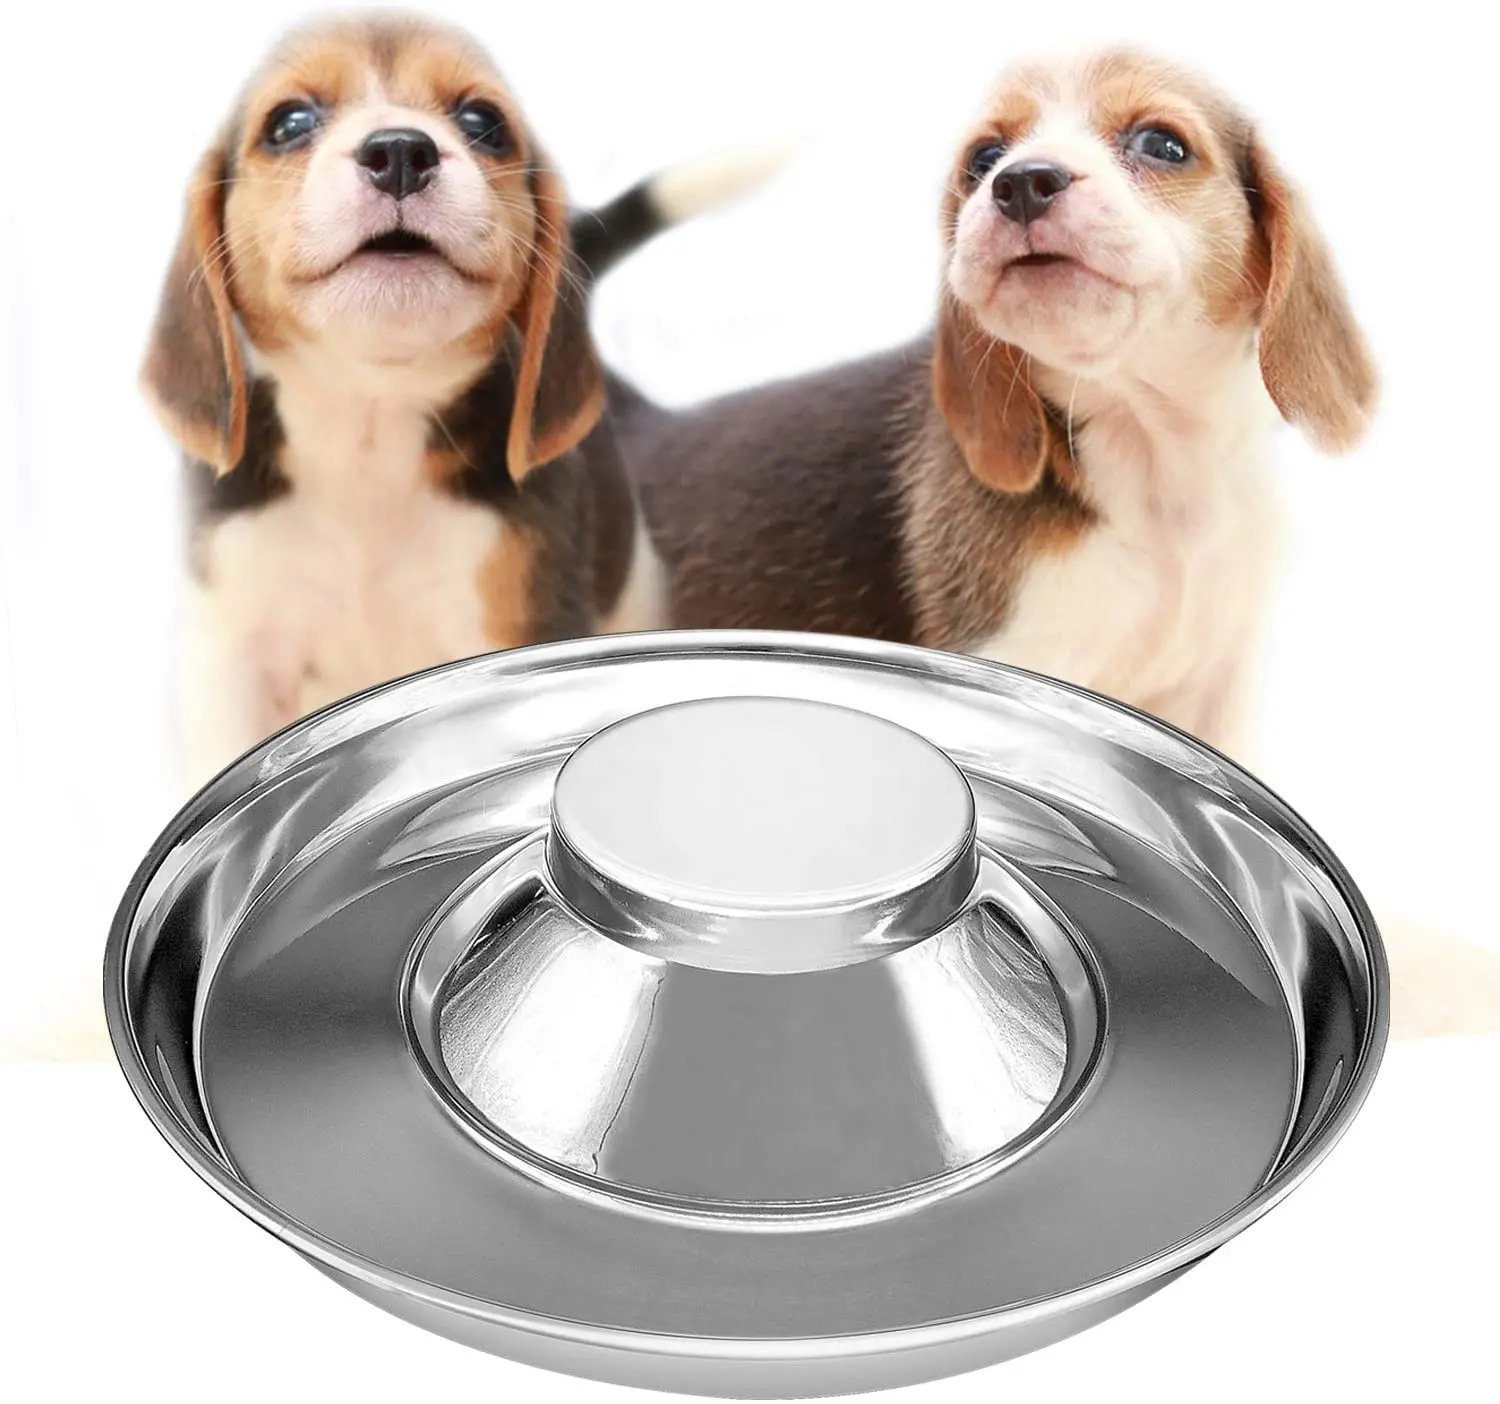 Gesunde Metall Hund Dish Welpe Slow Feeder Schalen Futter Fütterung Wasser Entwöhnung Haustiere Schüssel Silber Edelstahl Hunden apf